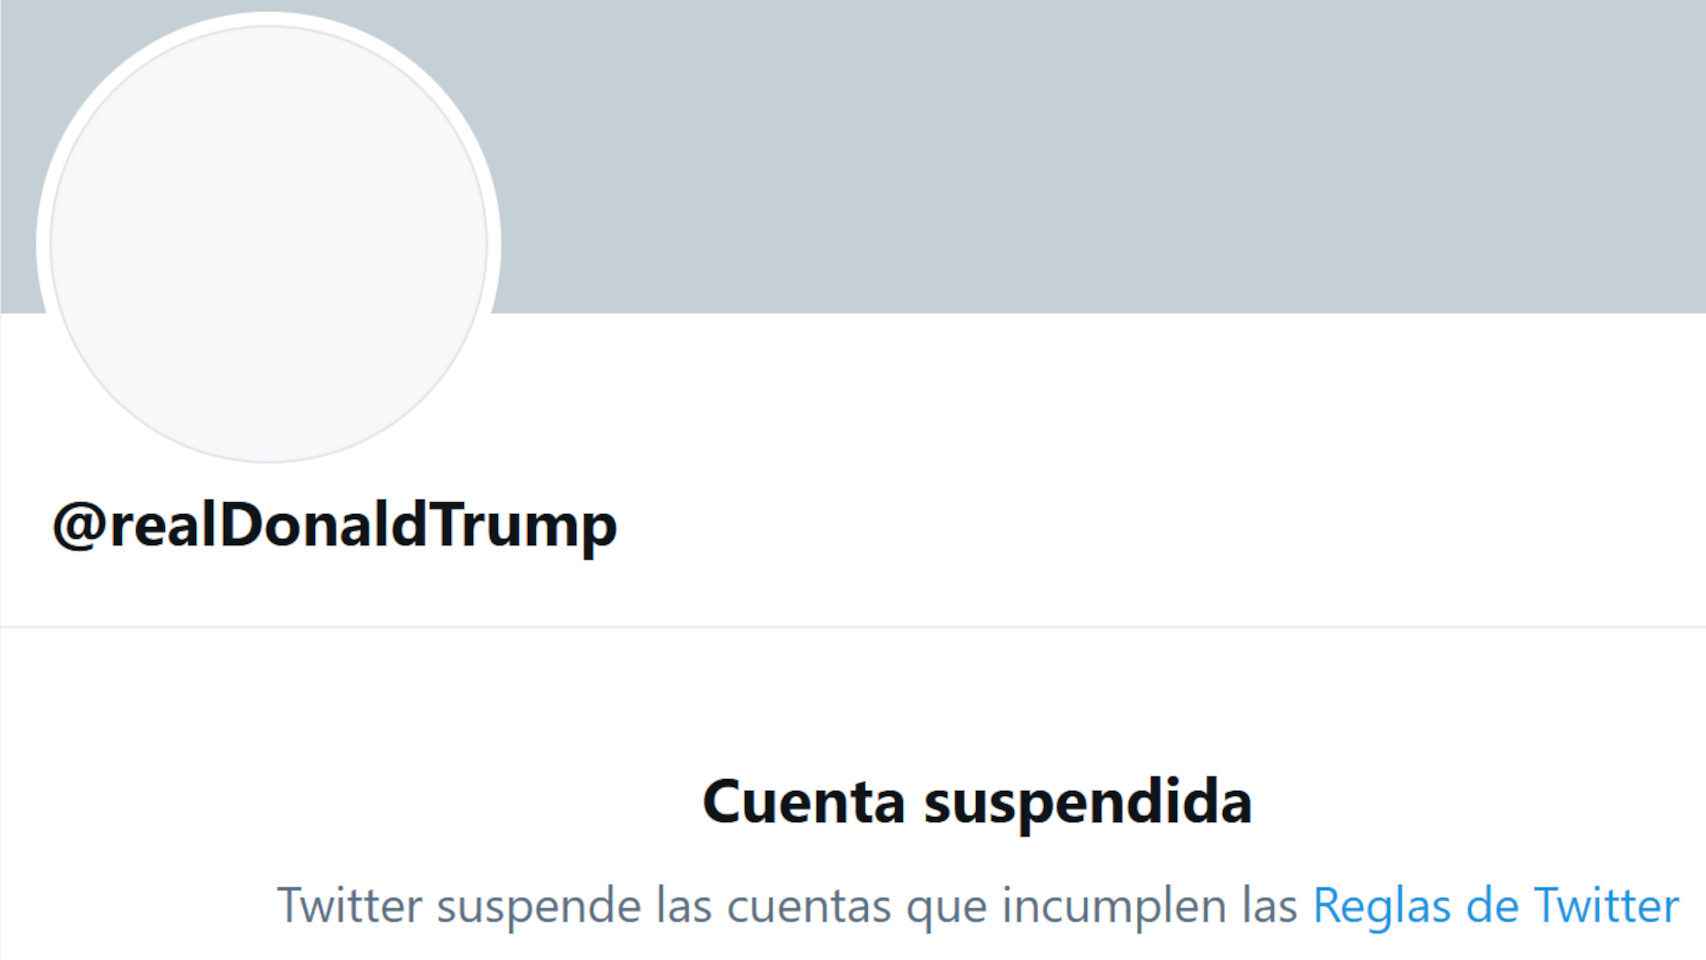 La cuenta de Donald Trump ha sido suspendida